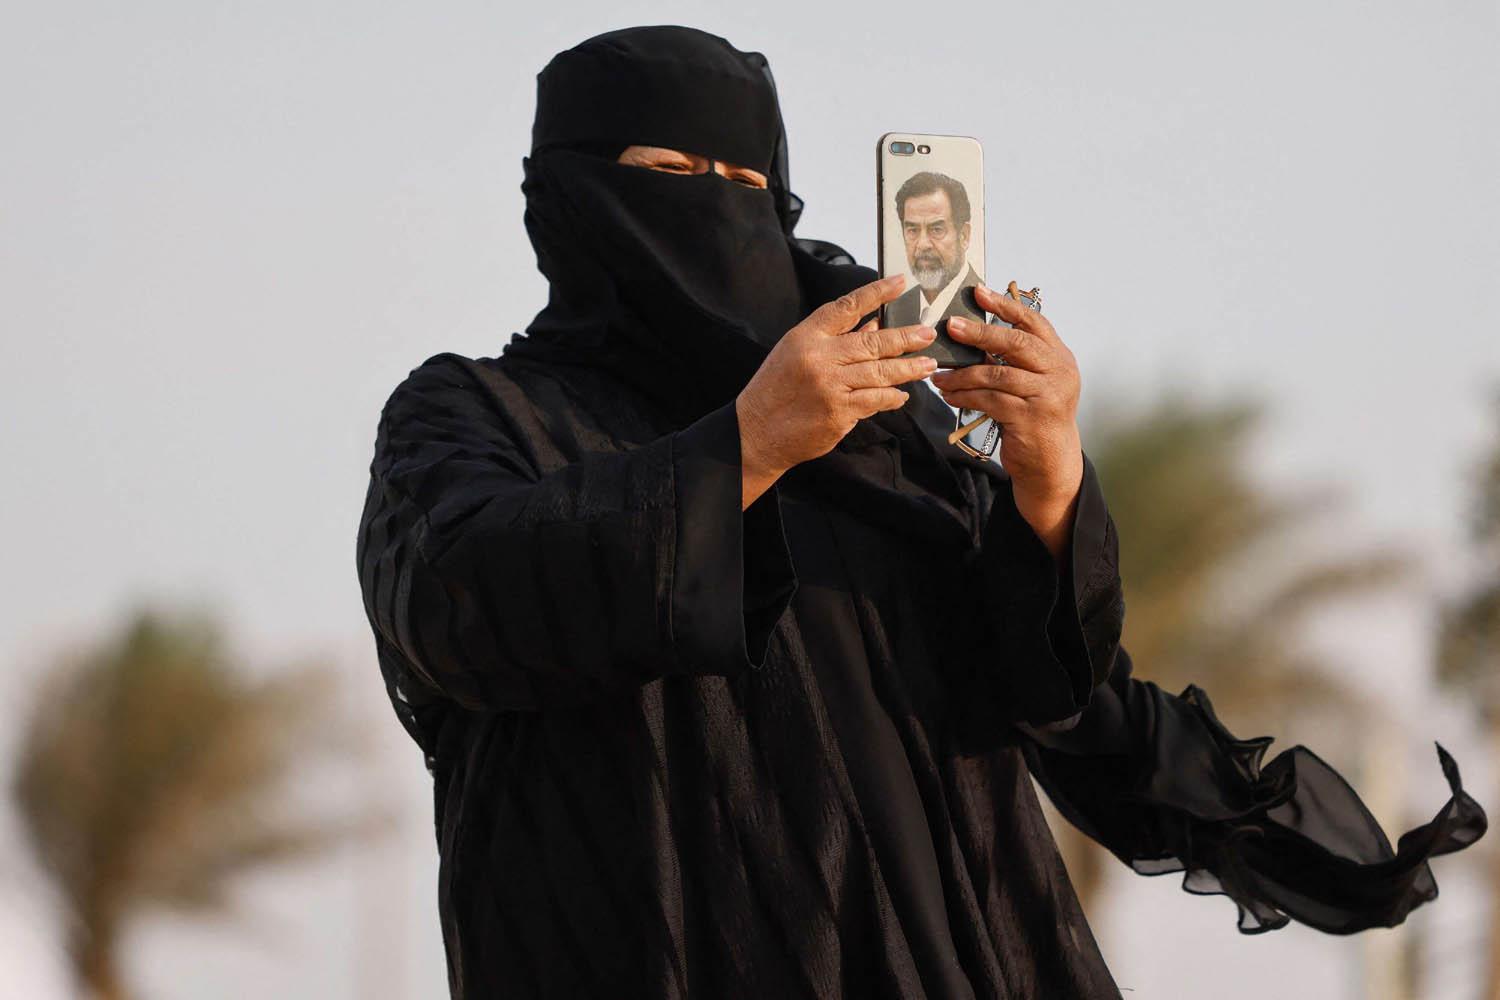 قطرية تأخذ صورة خلال المونديال بموبايل عليه صورة الرئيس العراقي الراحل صدام حسين